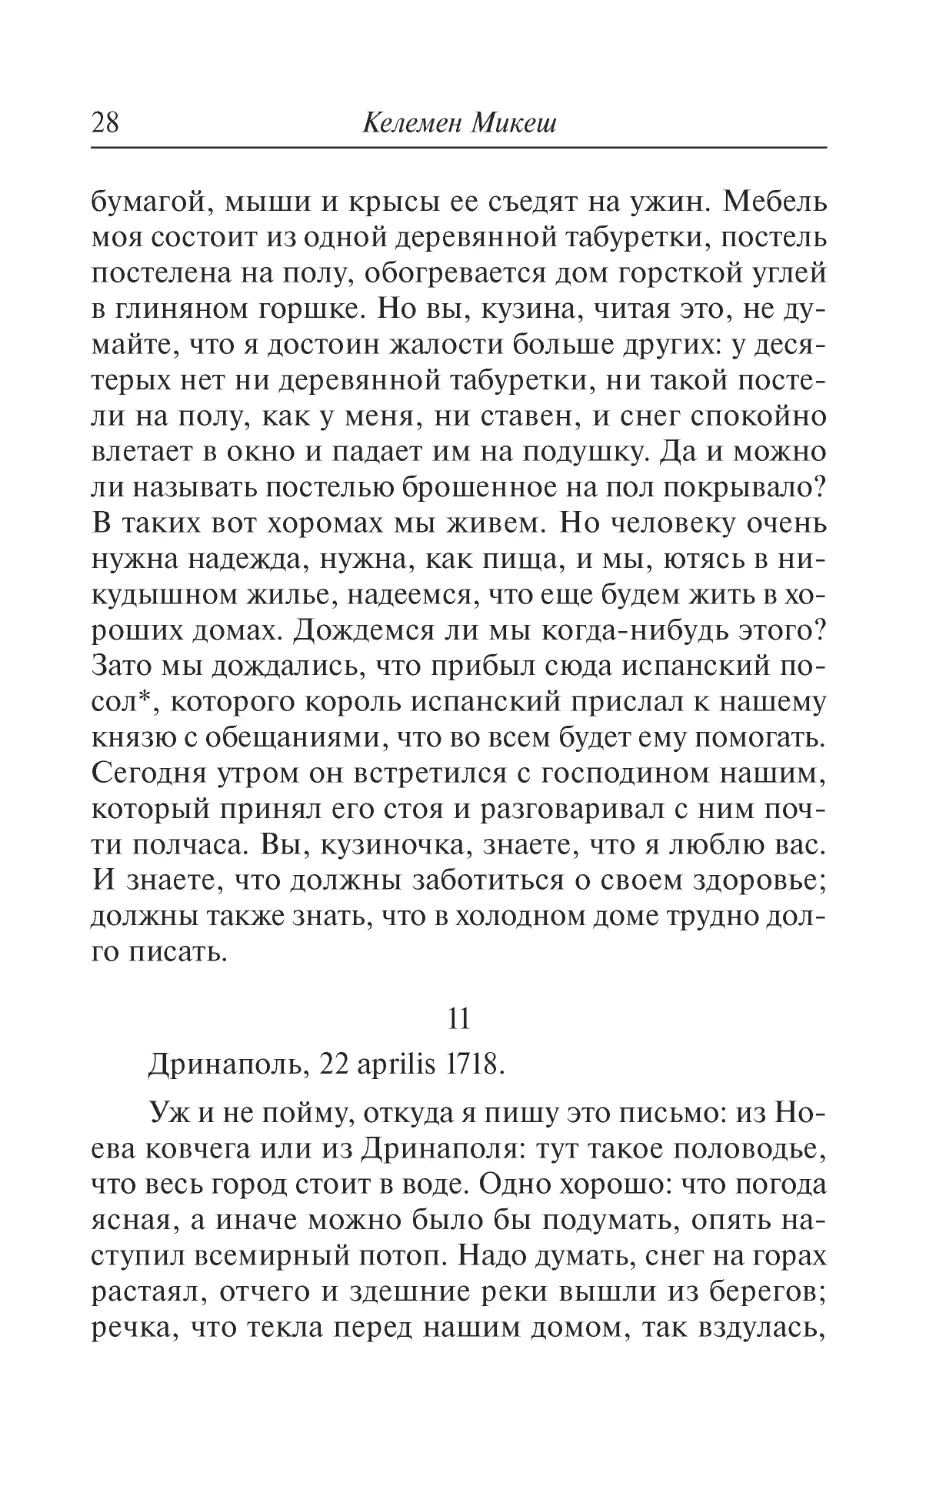 11. Дринаполь, 22 aprilis 1718